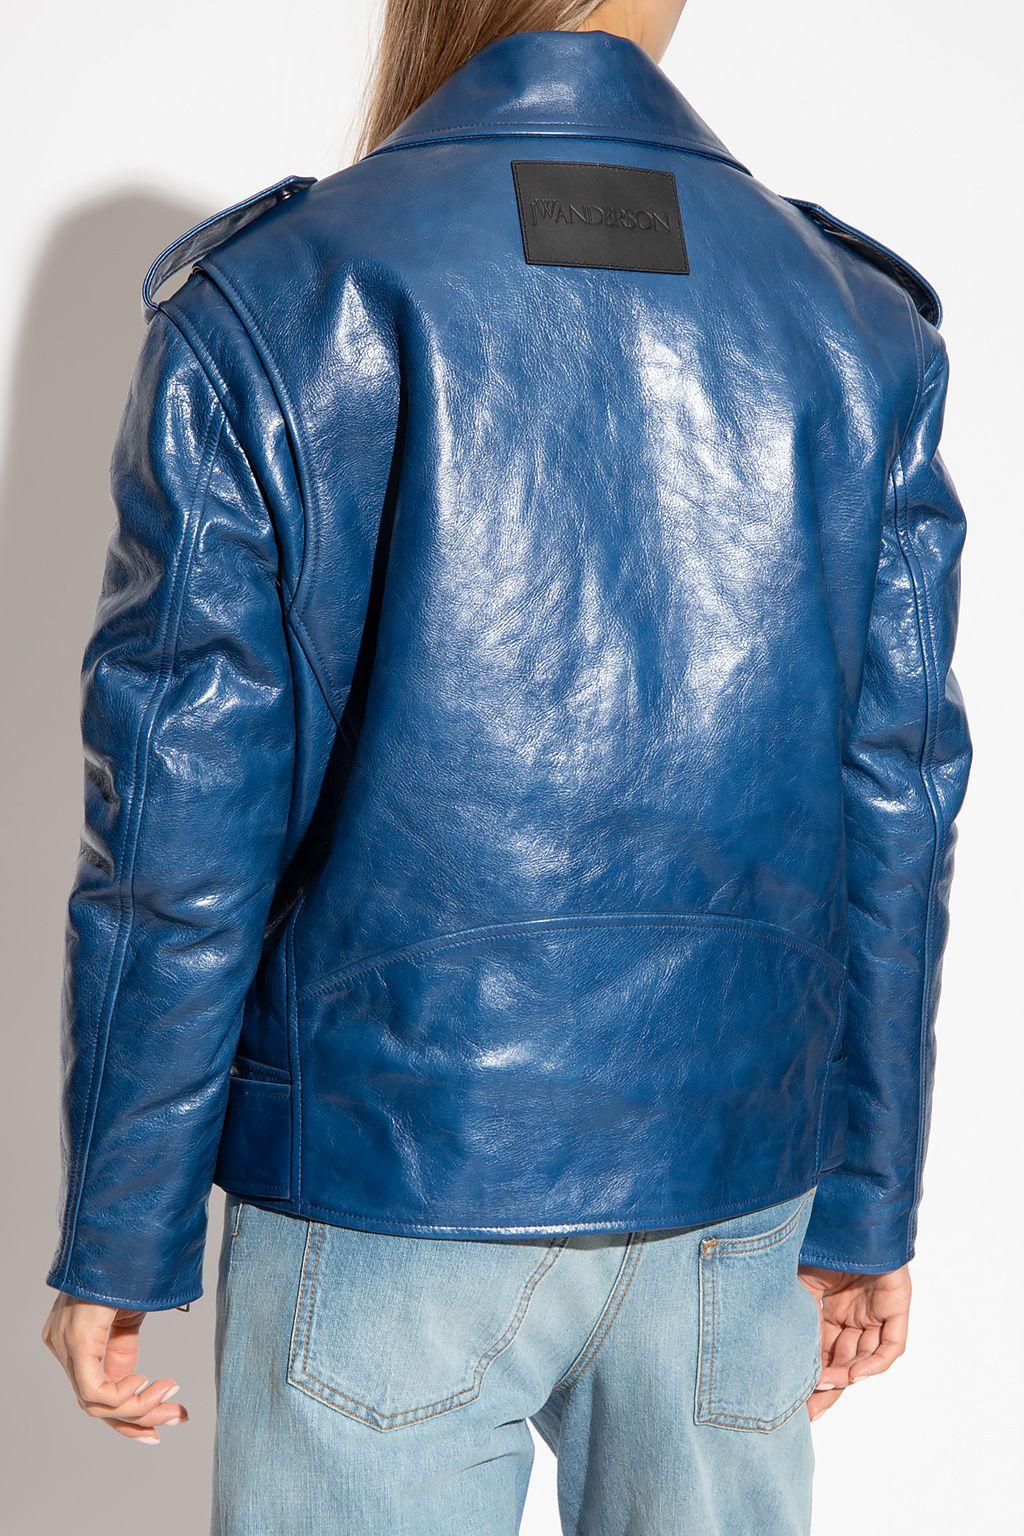 JW Anderson Oversized Jackets for Women - Shop on FARFETCH